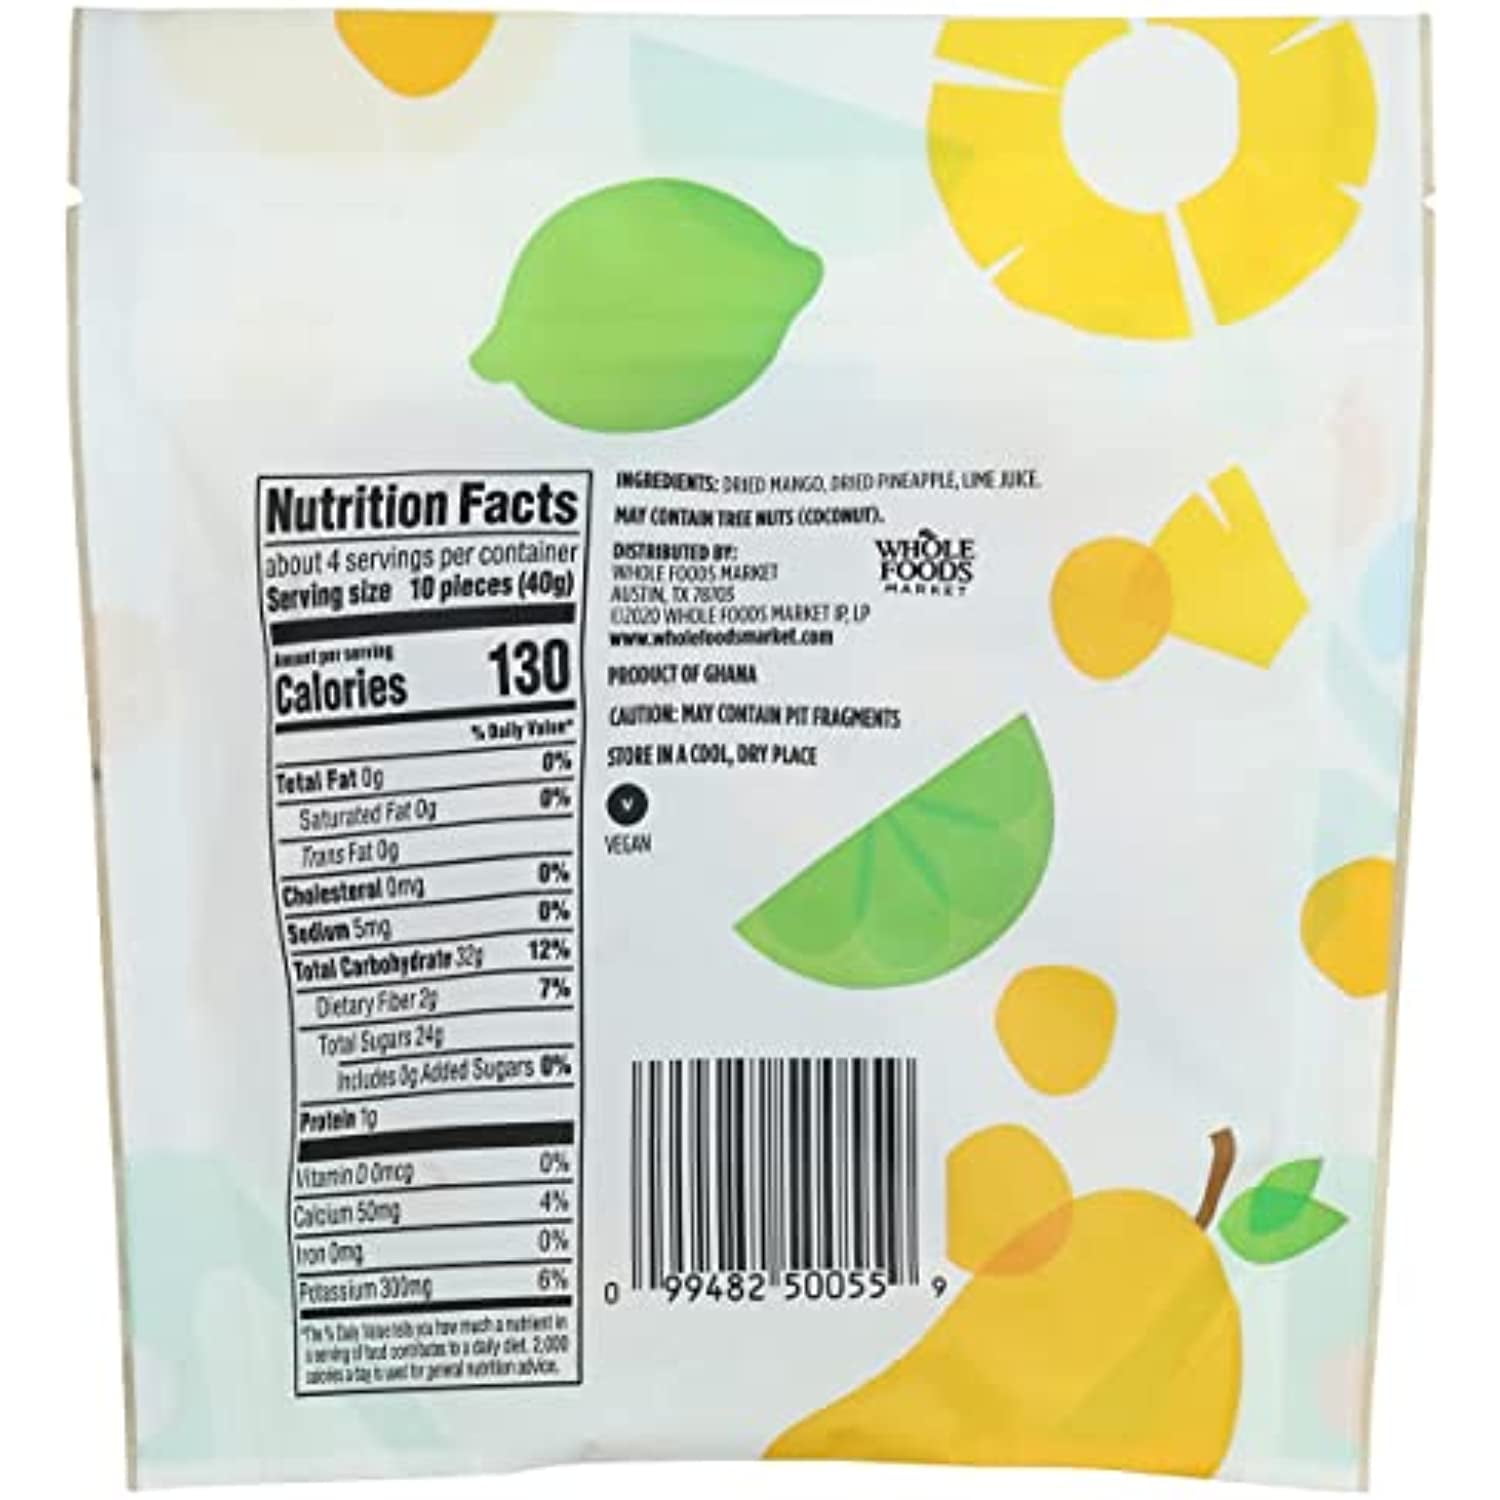  365 by Whole Foods Market, Fruit Bites Mango, 6 Ounce